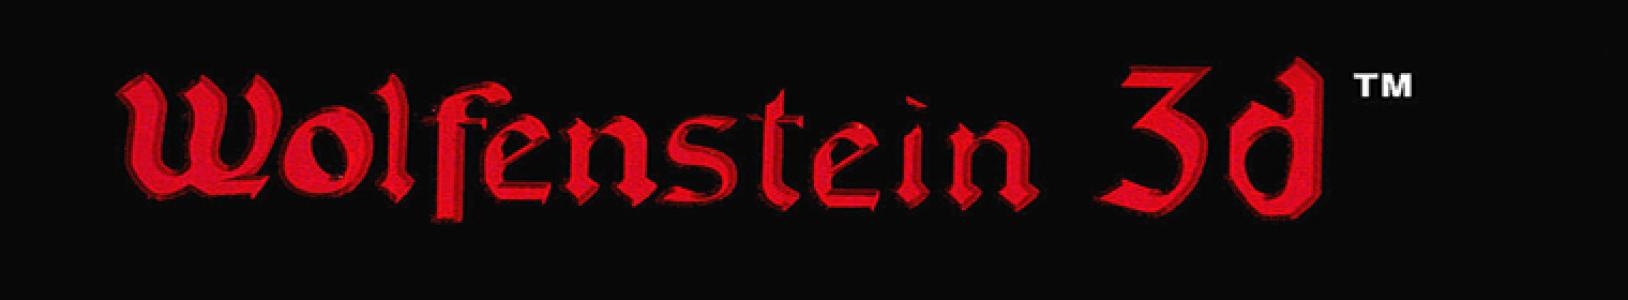 Wolfenstein 3-D banner